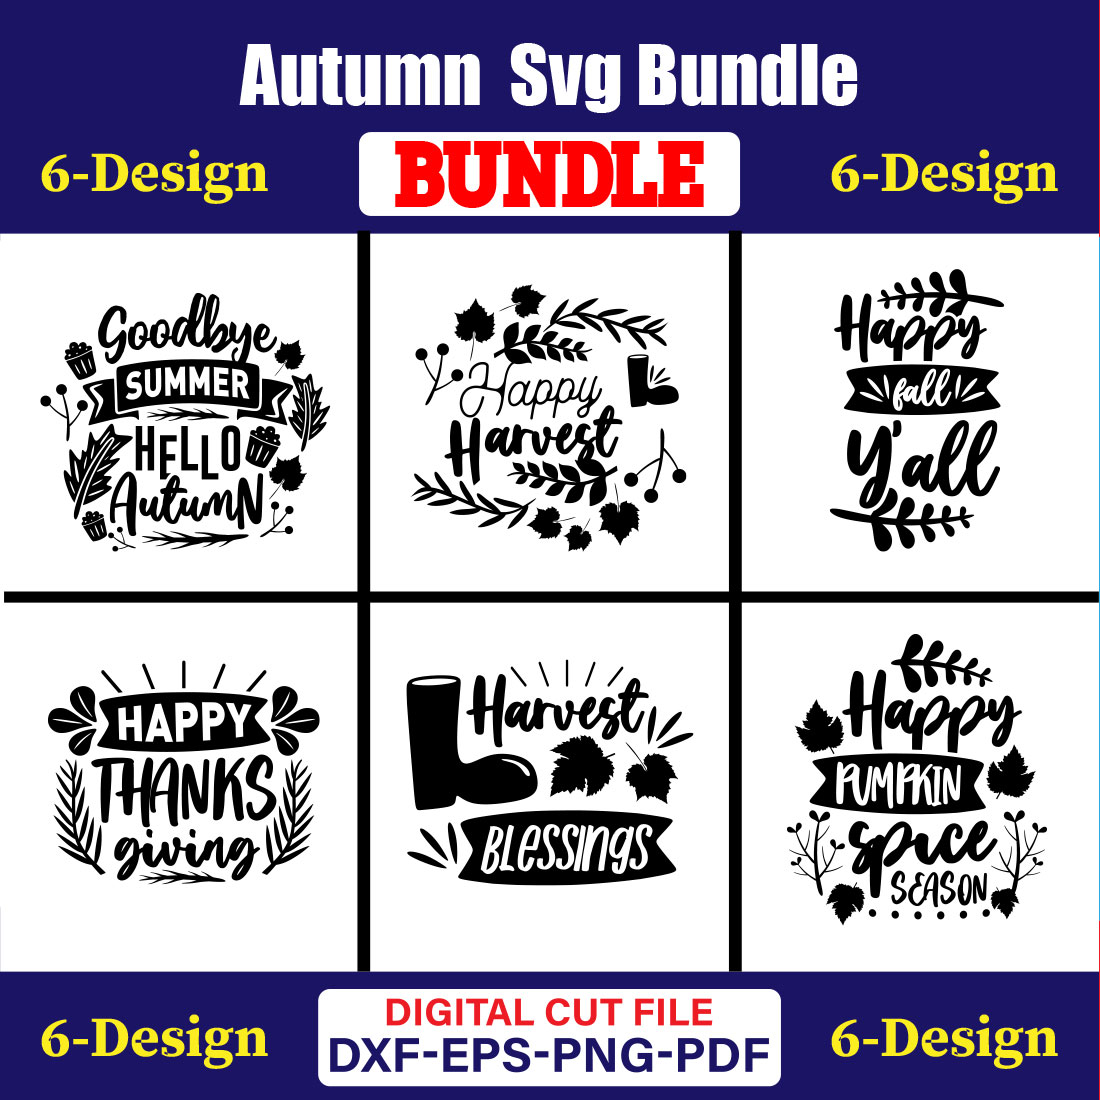 Autumn SVG T-shirt Design Bundle Vol-03 cover image.